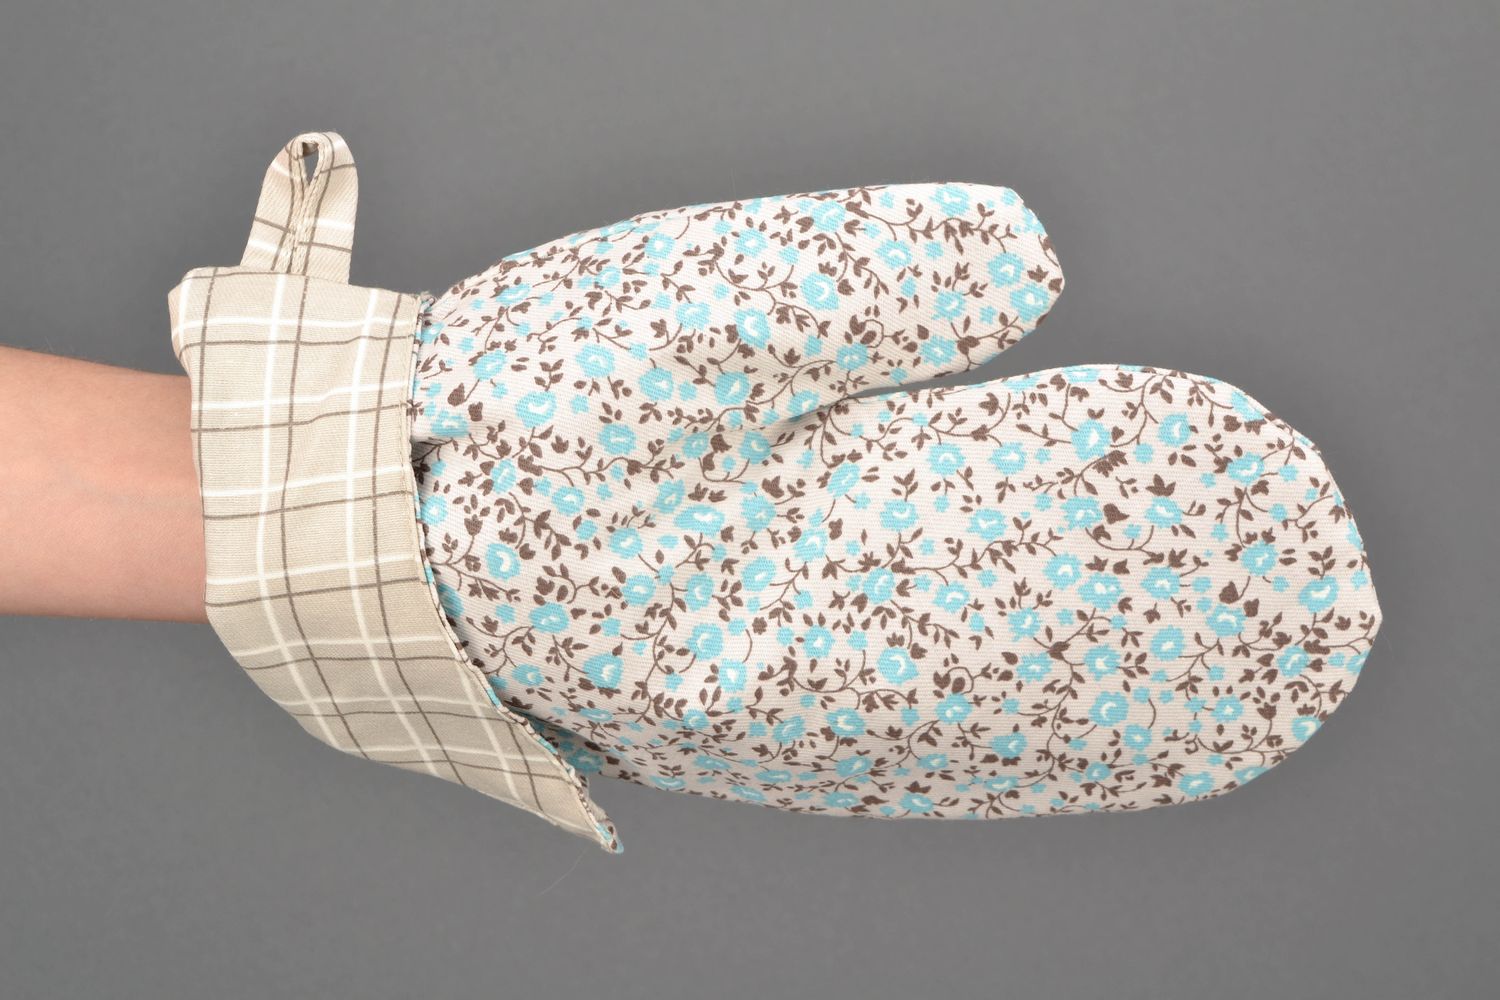 Текстильная рукавичка-прихватка для горячего с цветочным принтом фото 2